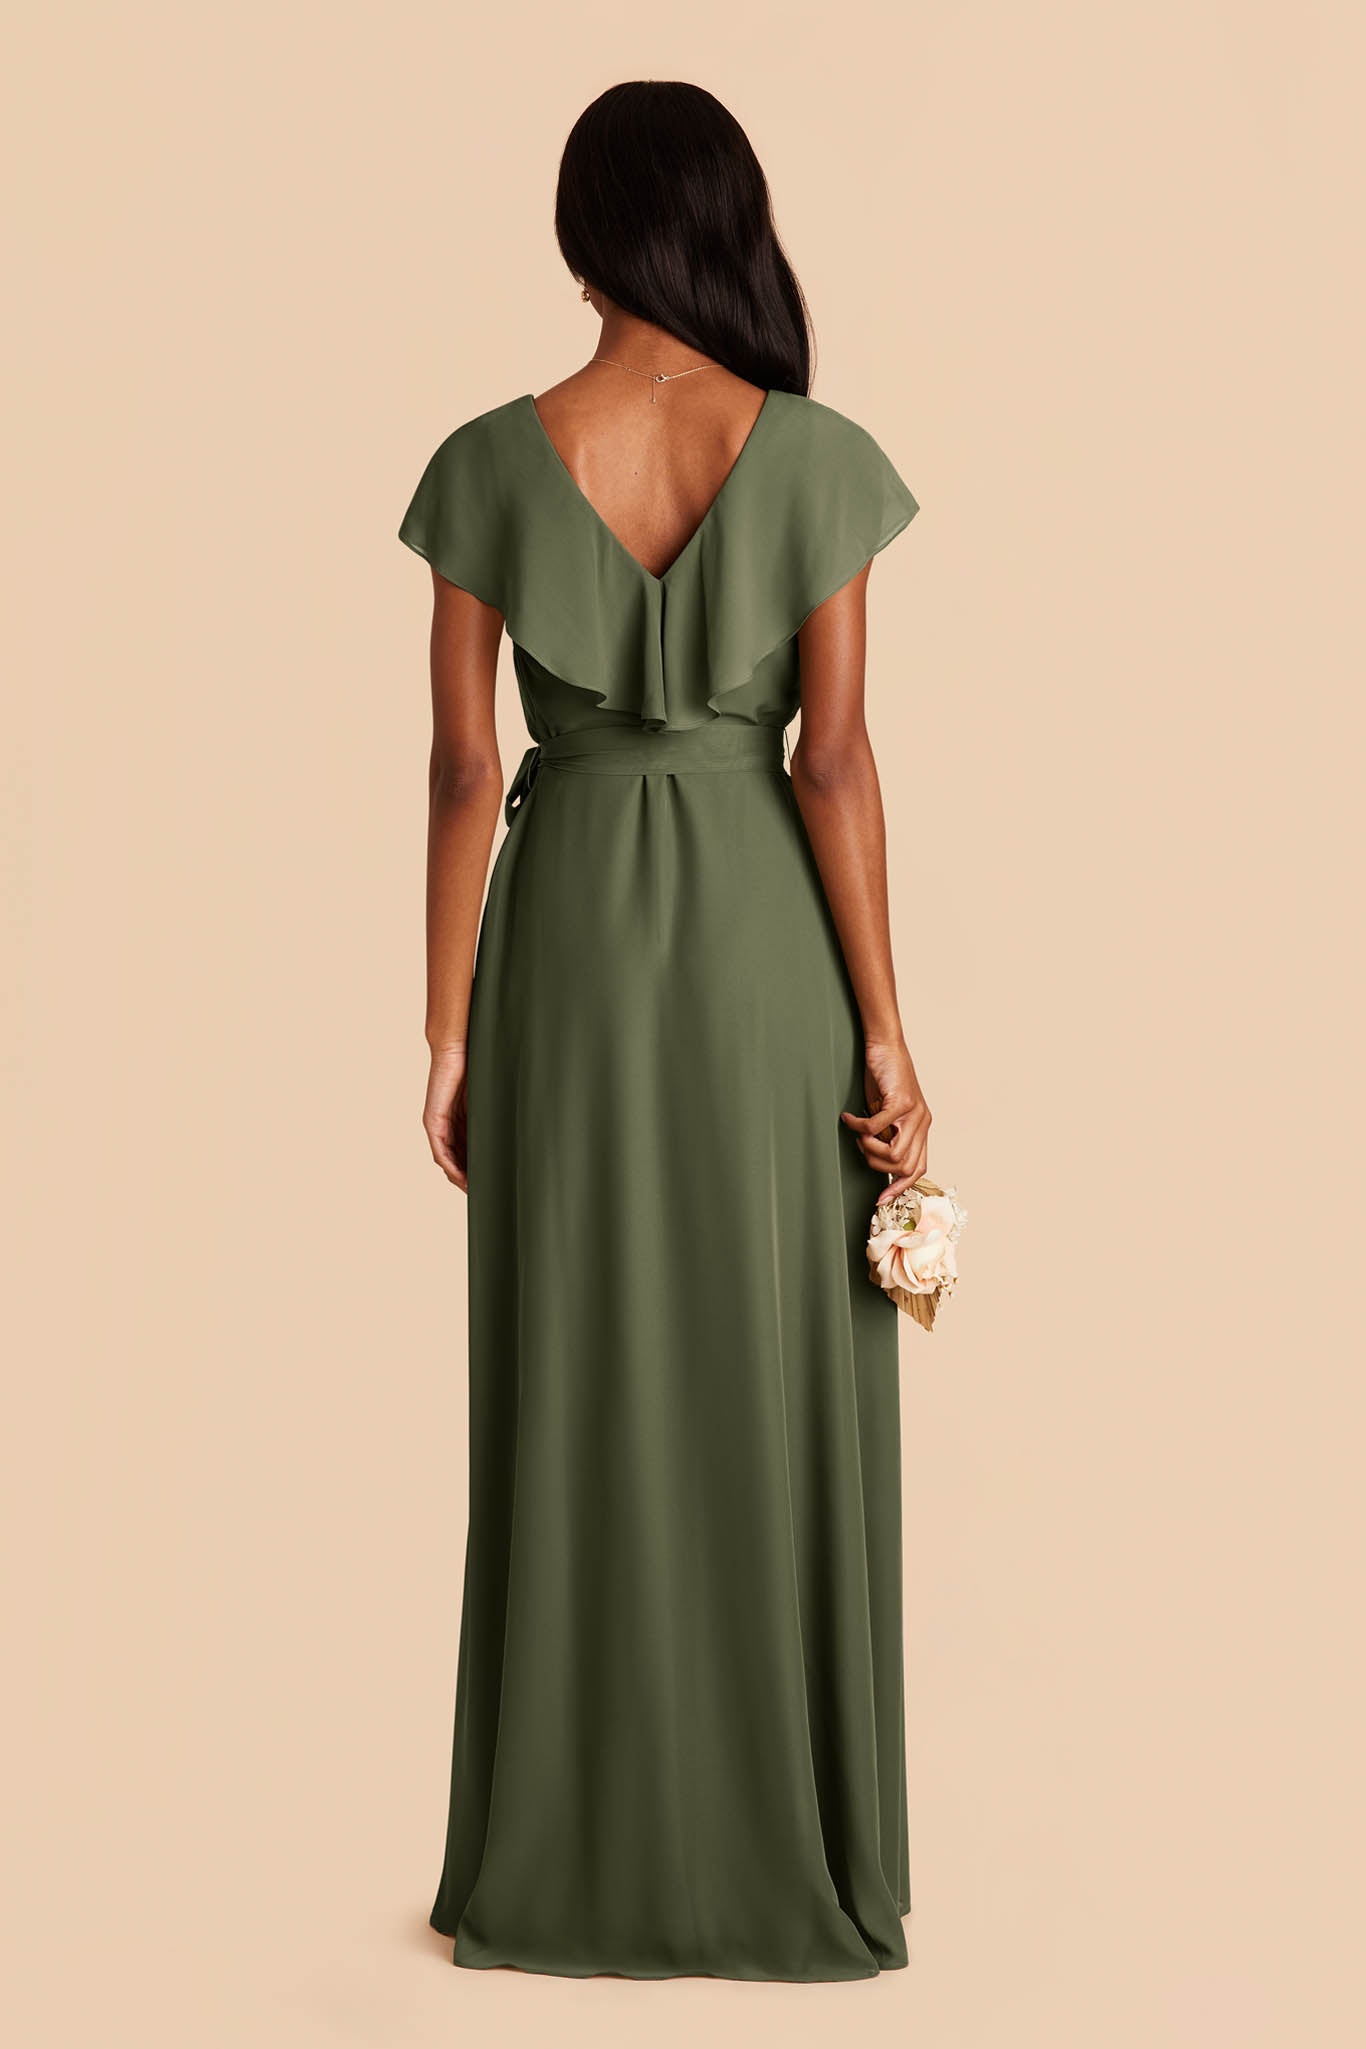 Olive Jackson Chiffon Dress by Birdy Grey